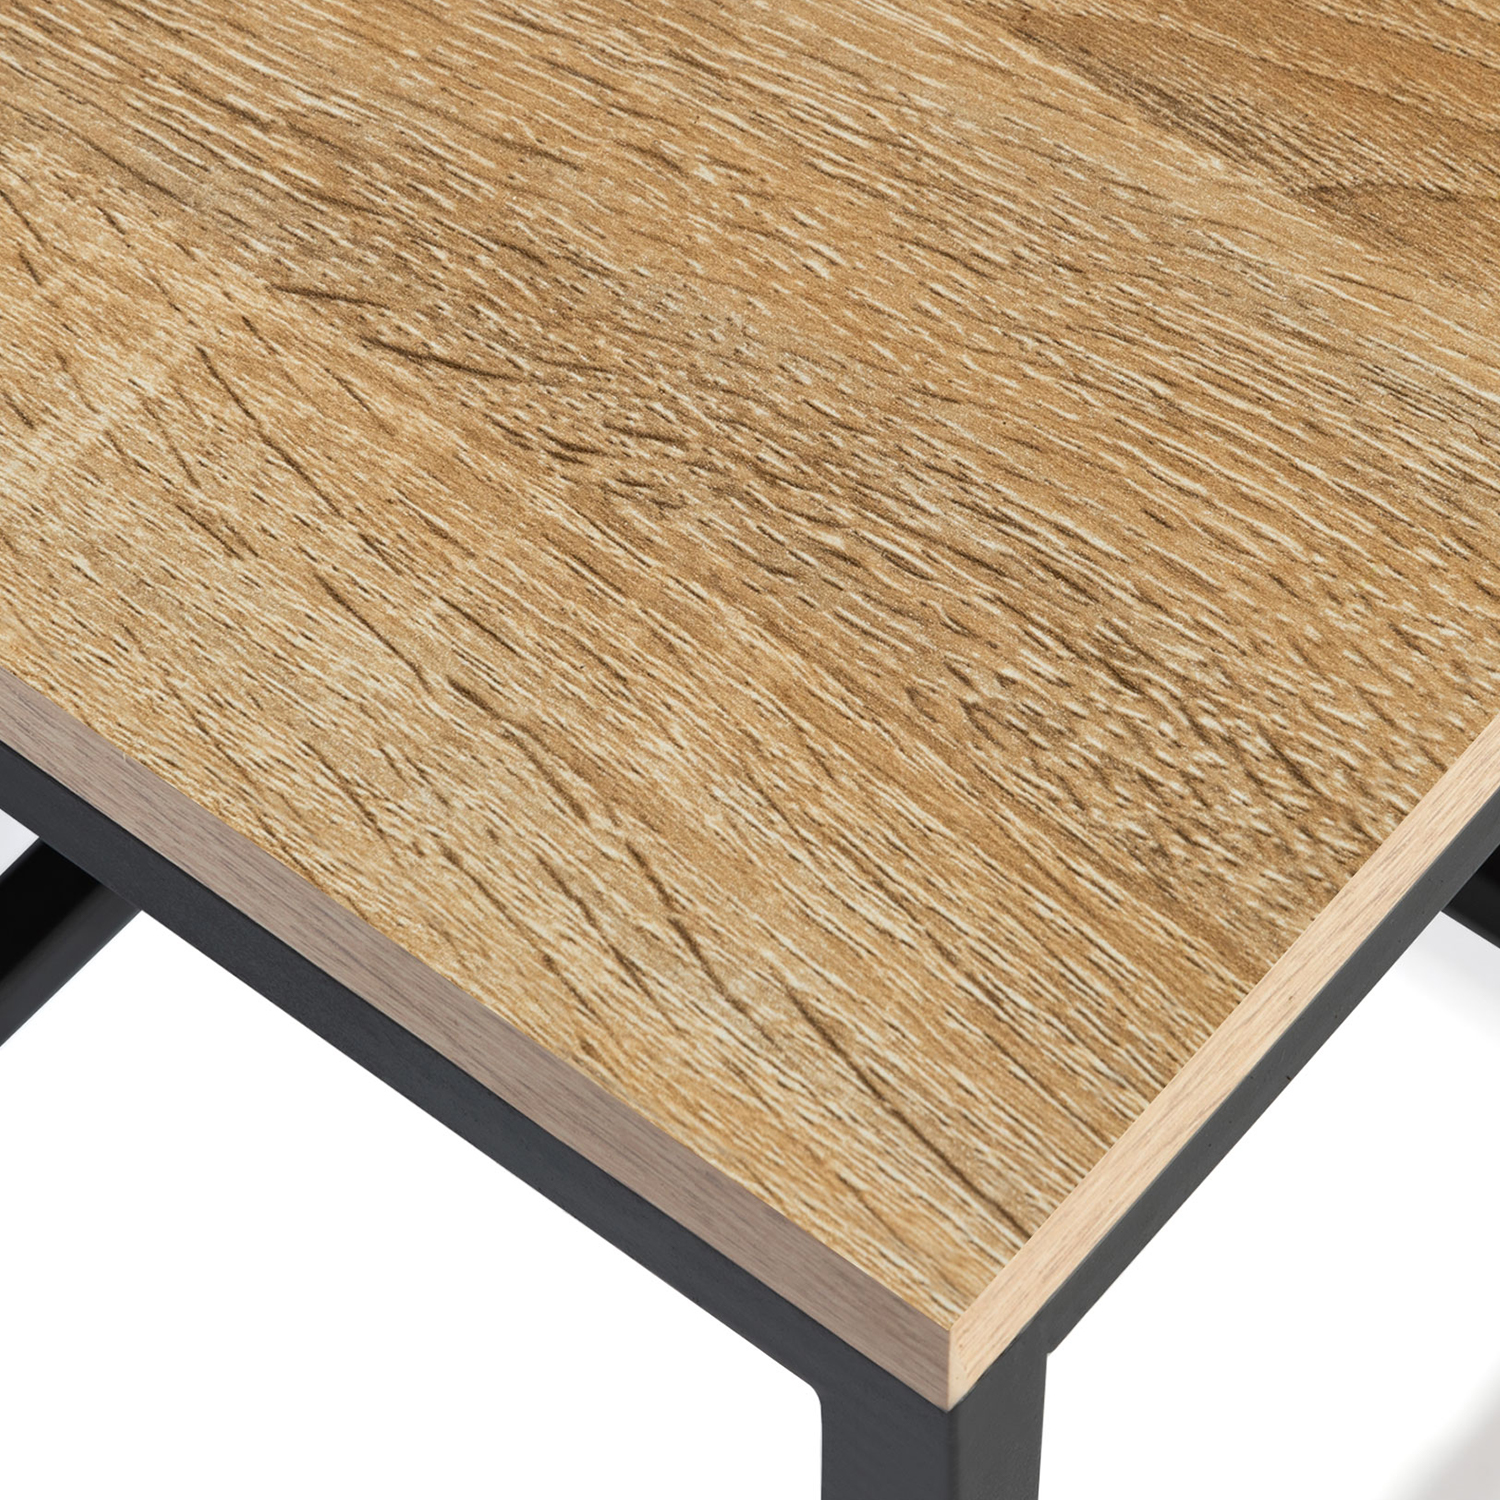 3 tables basses d'appoint style industriel carrées - DETROIT